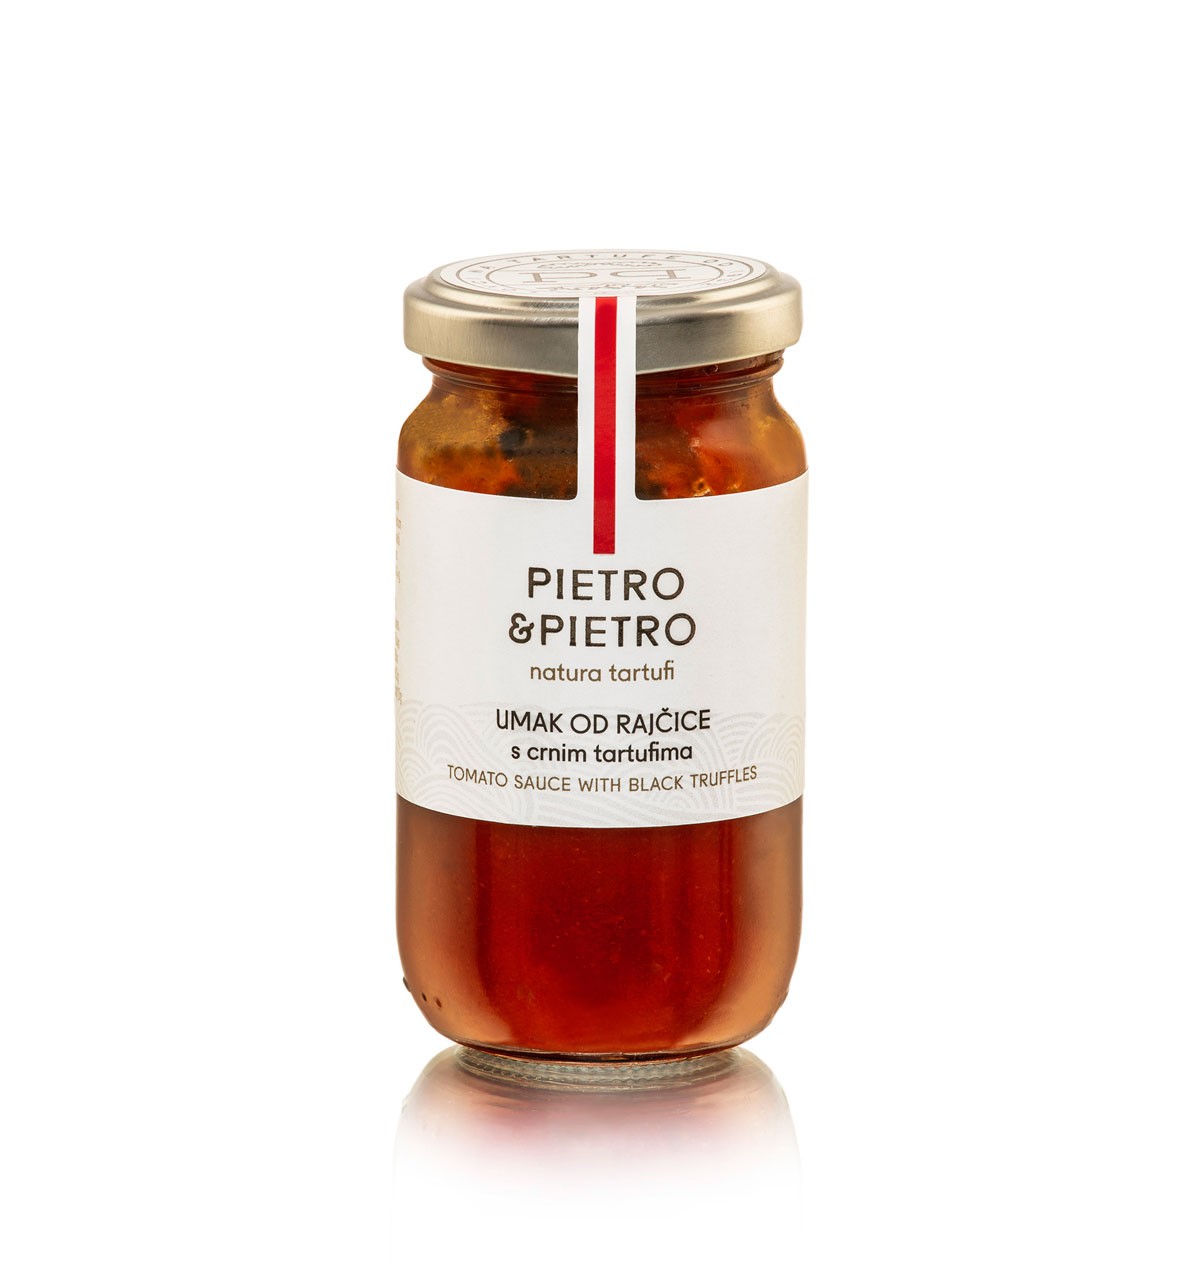 tomato sauce with black truffles, Pietro & Pietro by Natura Tartufi
